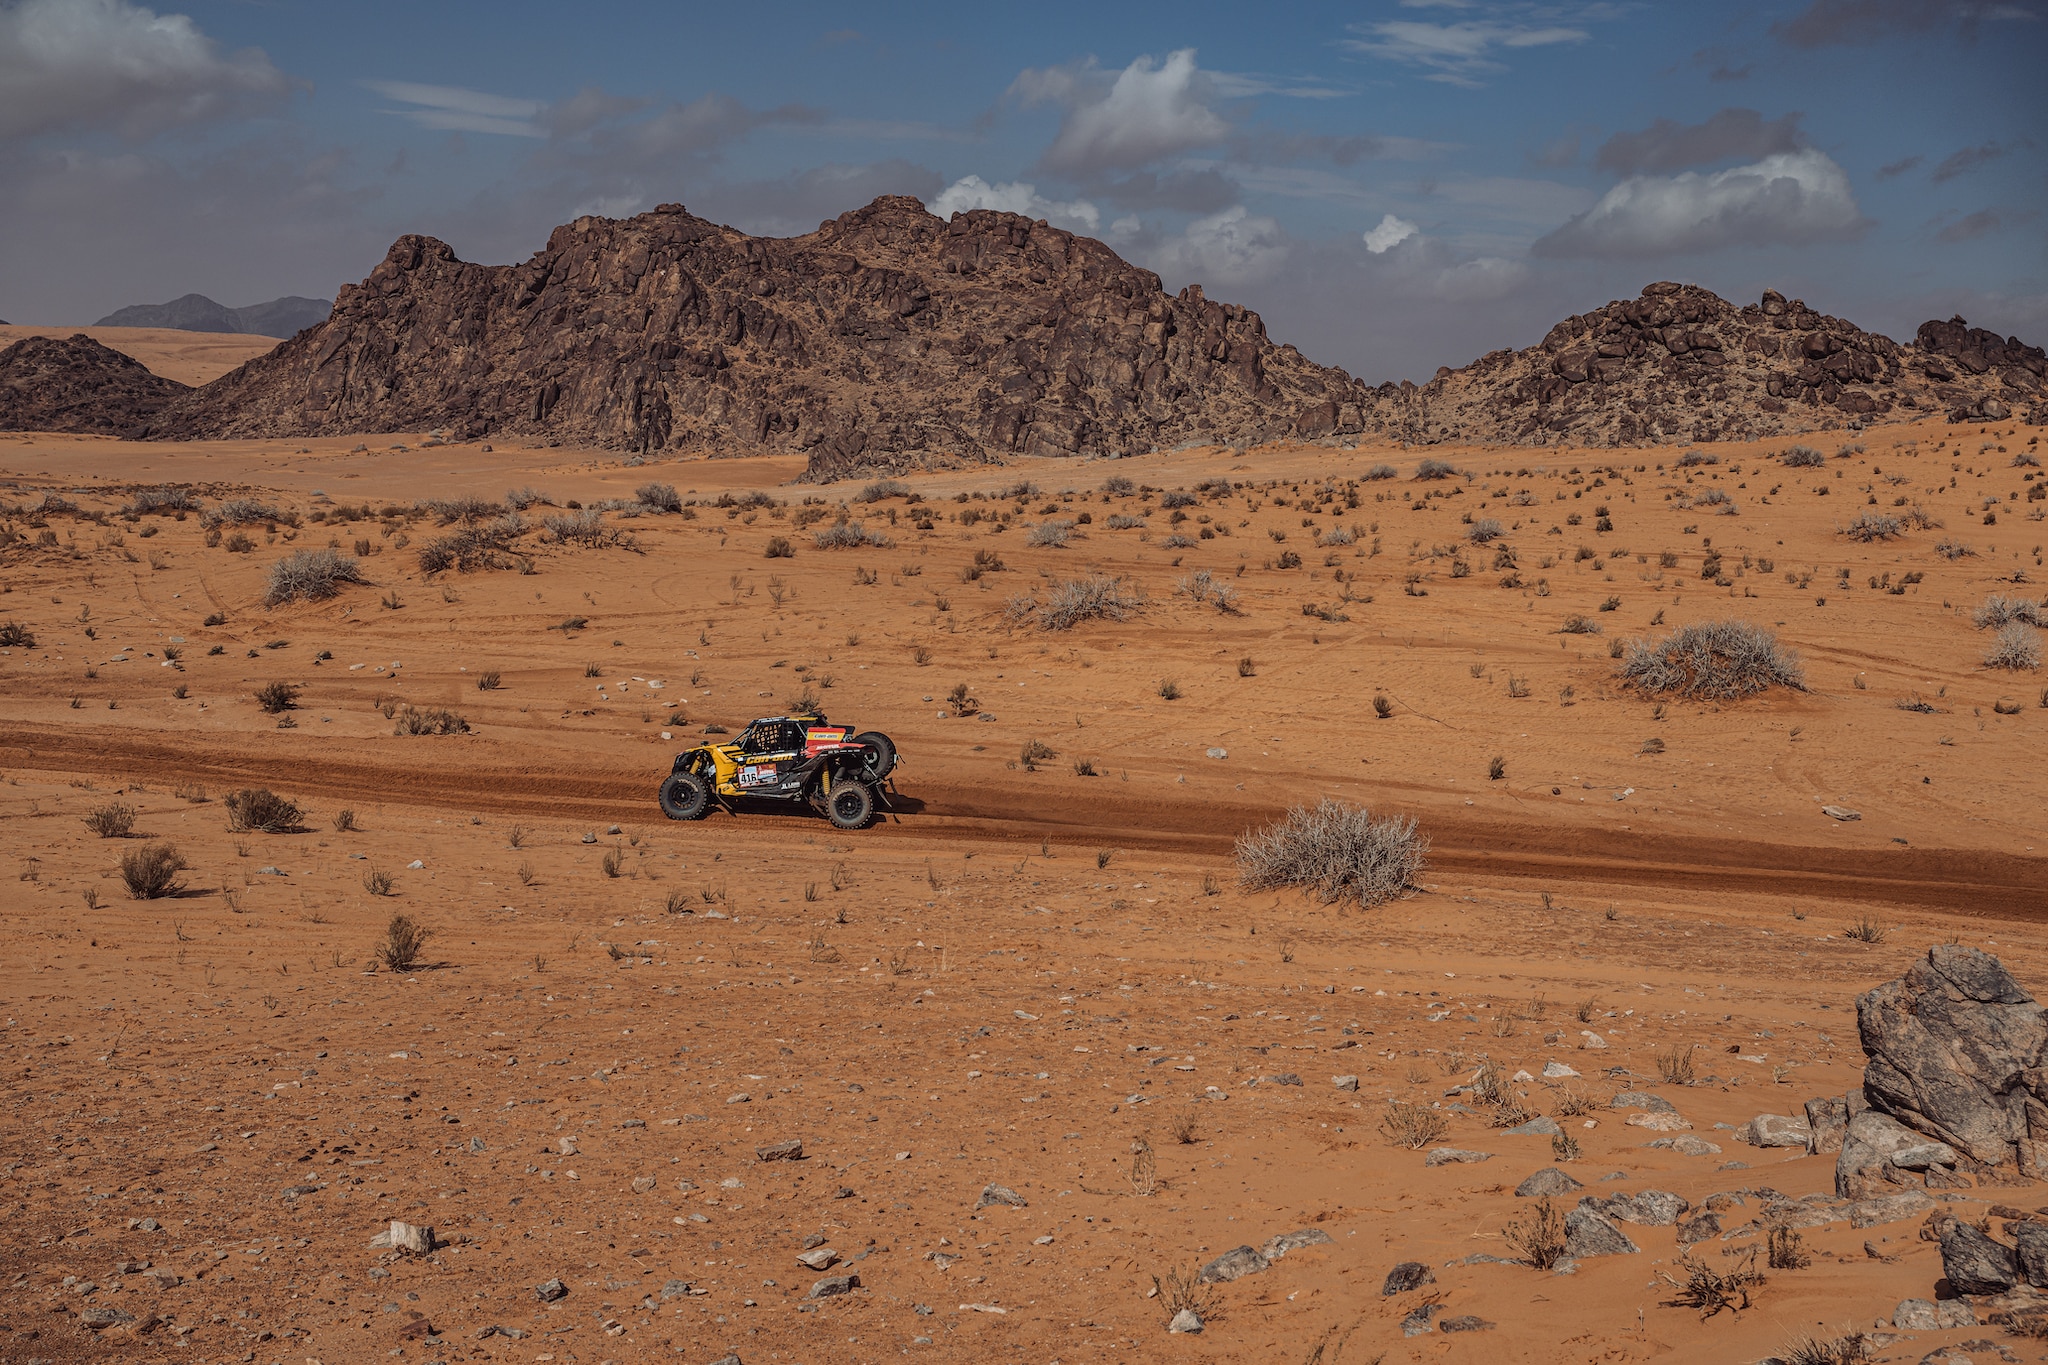 Maverick x3 acelerando por el desierto